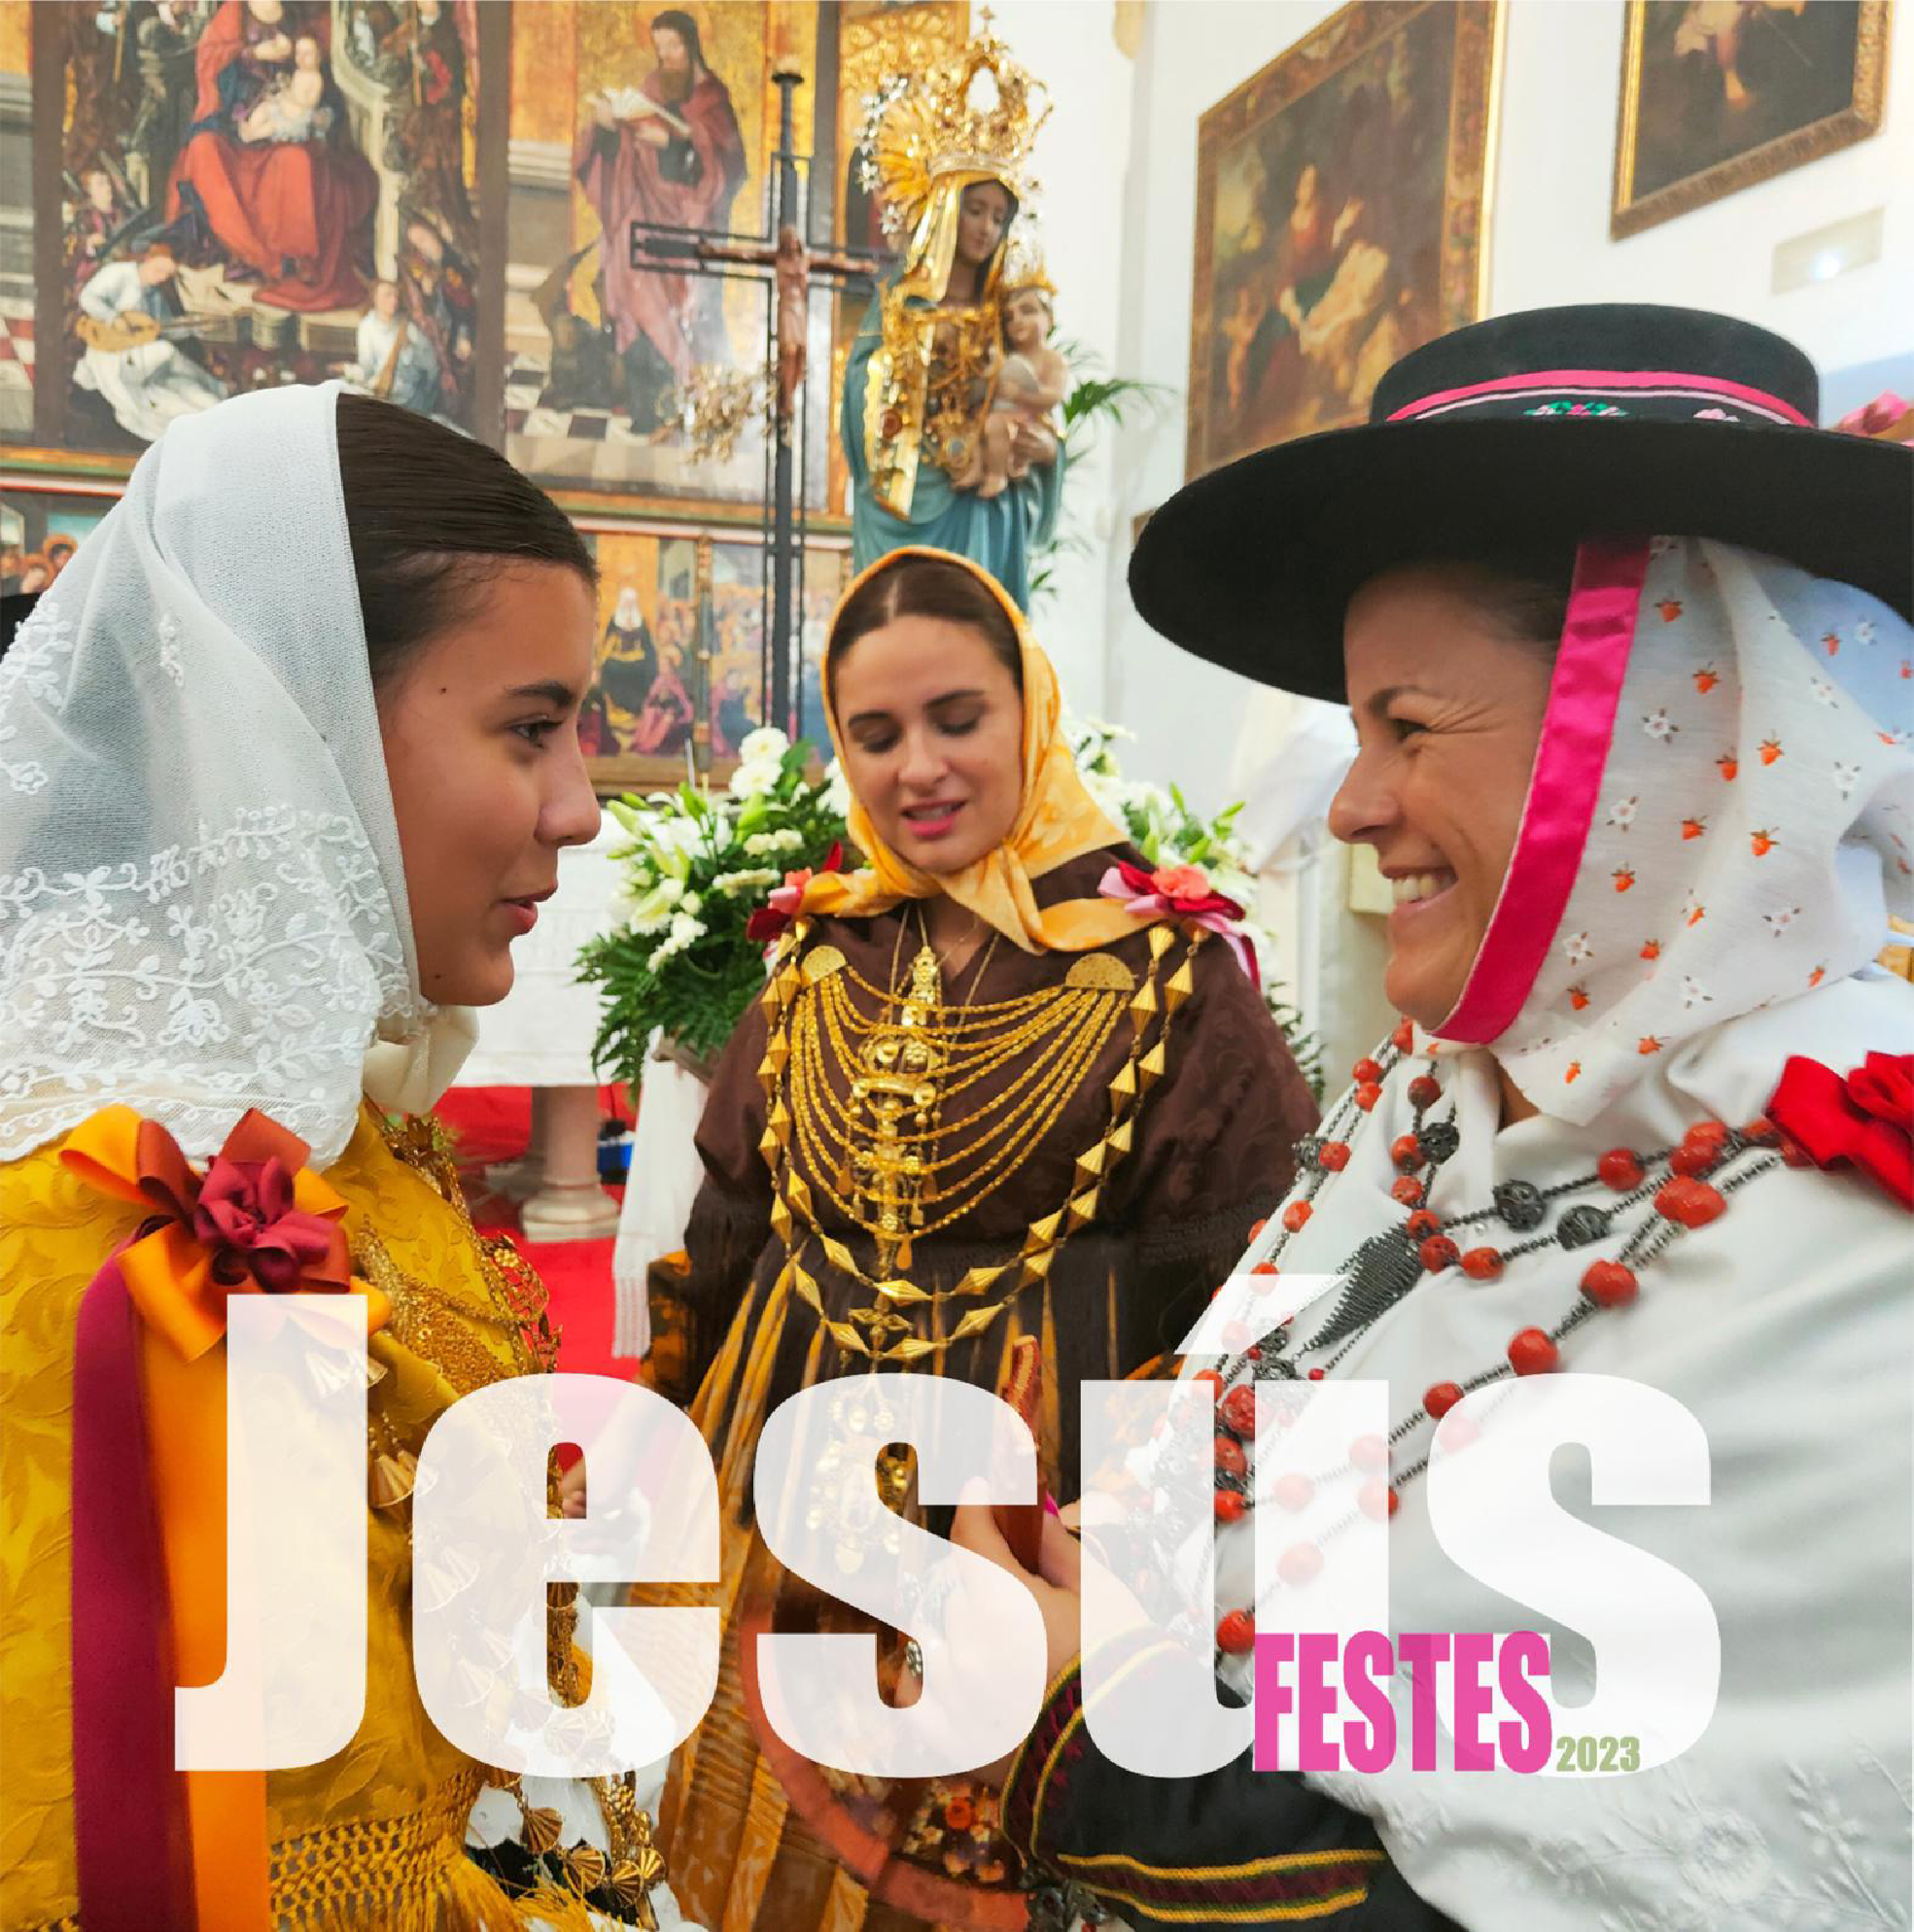 Las fiestas de Jesús empezarán este sábado con una jornada volcada en la tradición ibicencas y contarán con una gran fiesta ‘flower power’